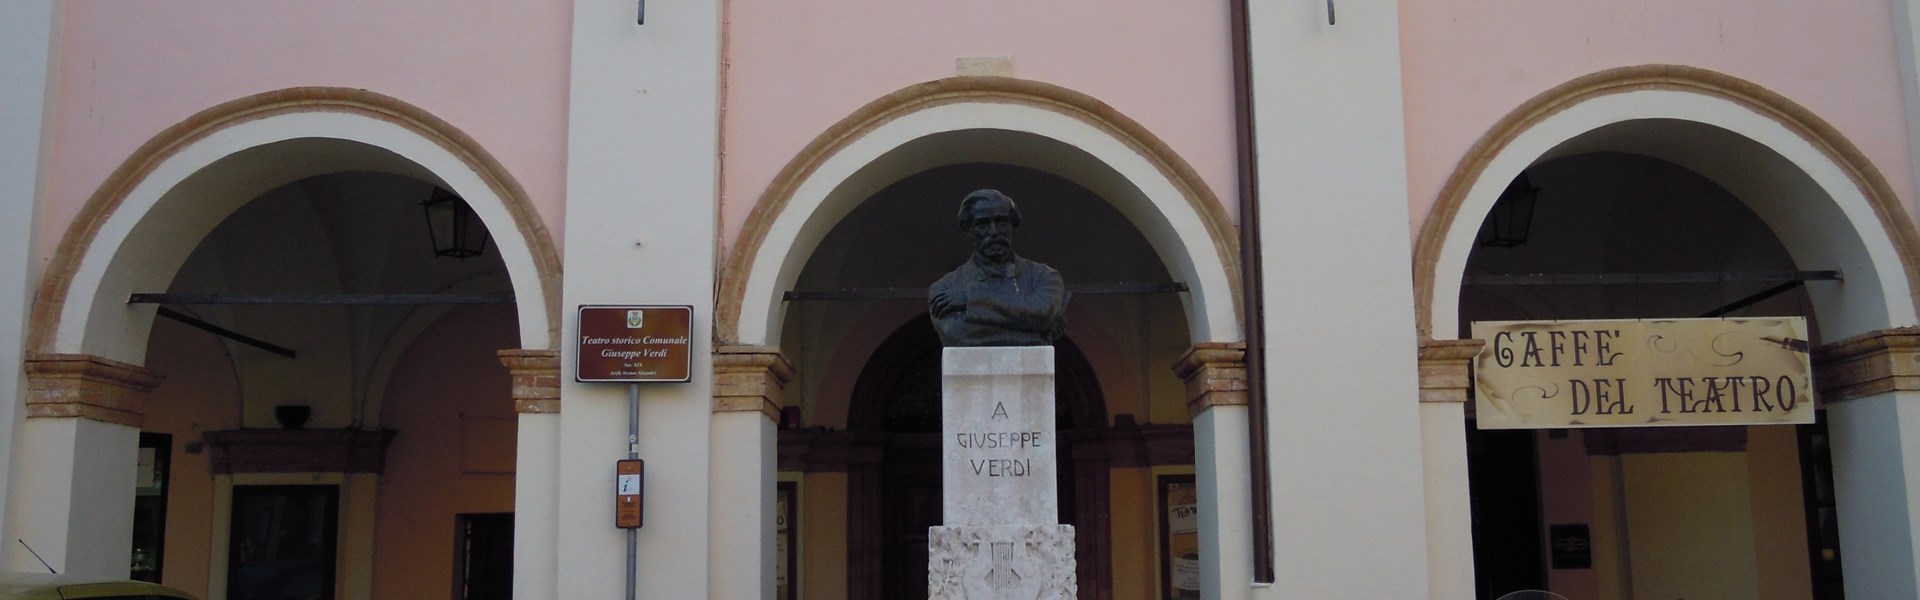 Pollenza - Teatro Giuseppe Verdi - facciata